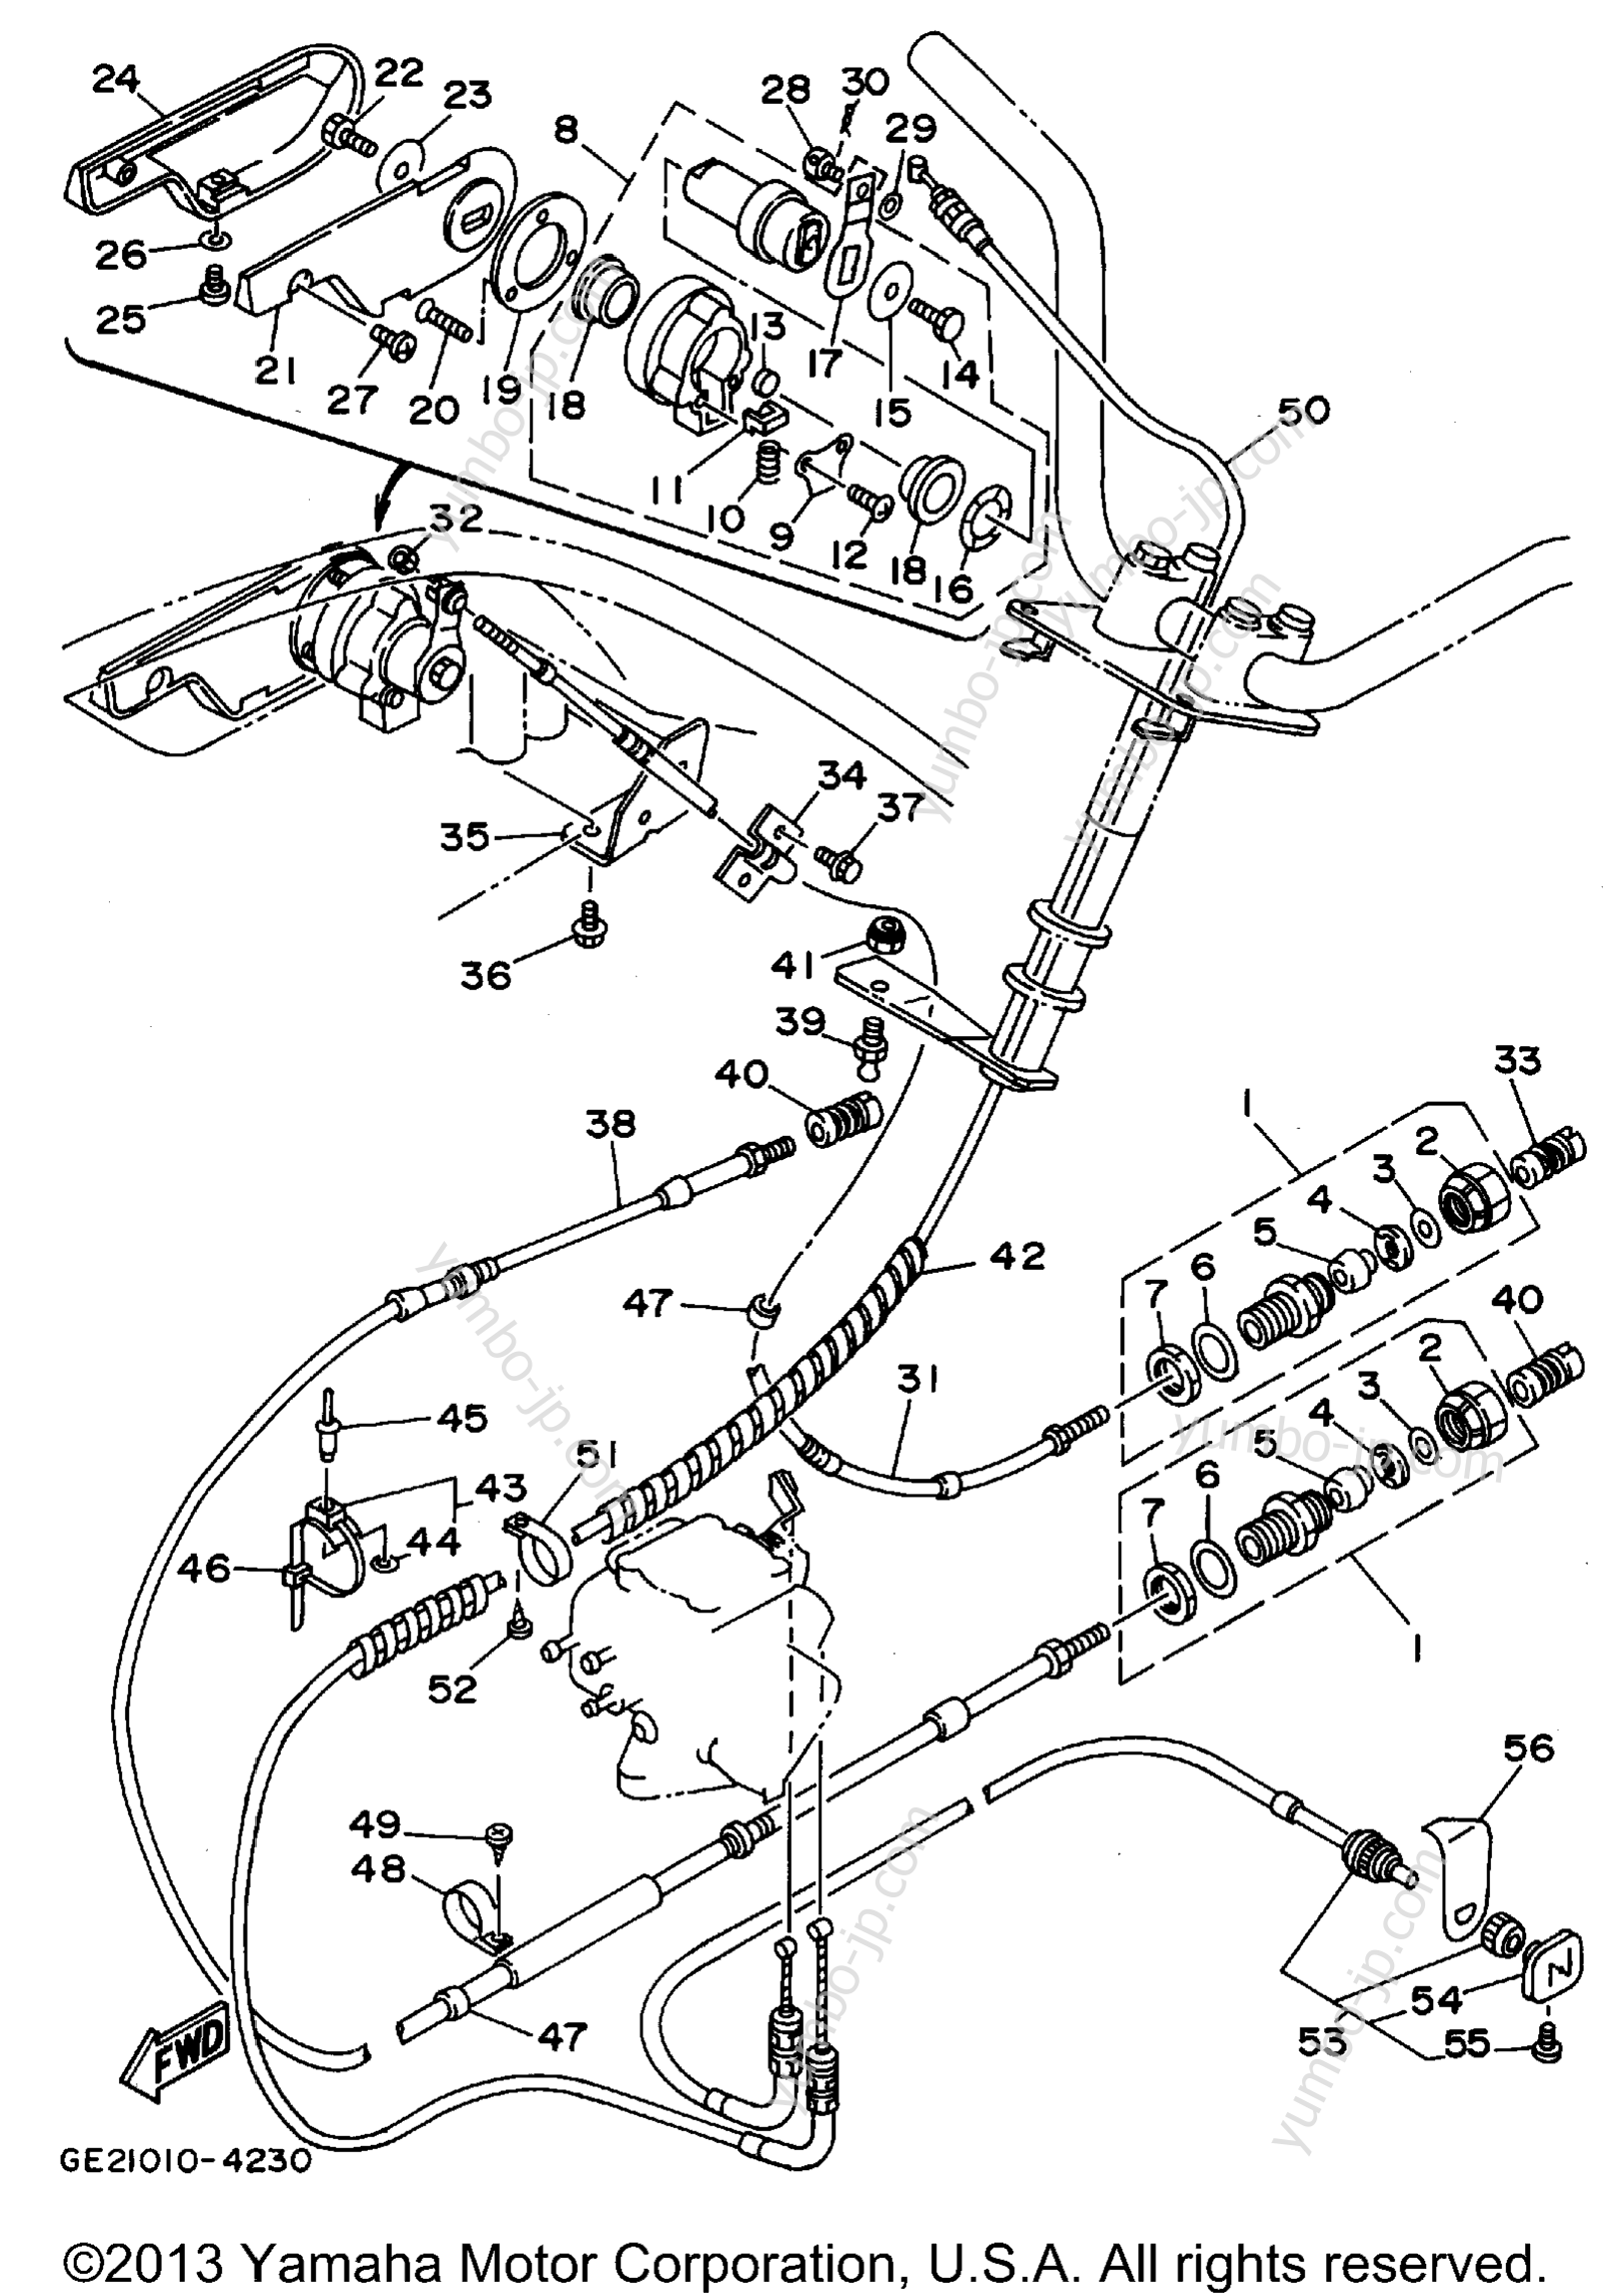 Устройство дистанционного управления / Кабеля для гидроциклов YAMAHA WAVE RUNNER III GP (WRA700T) 1995 г.